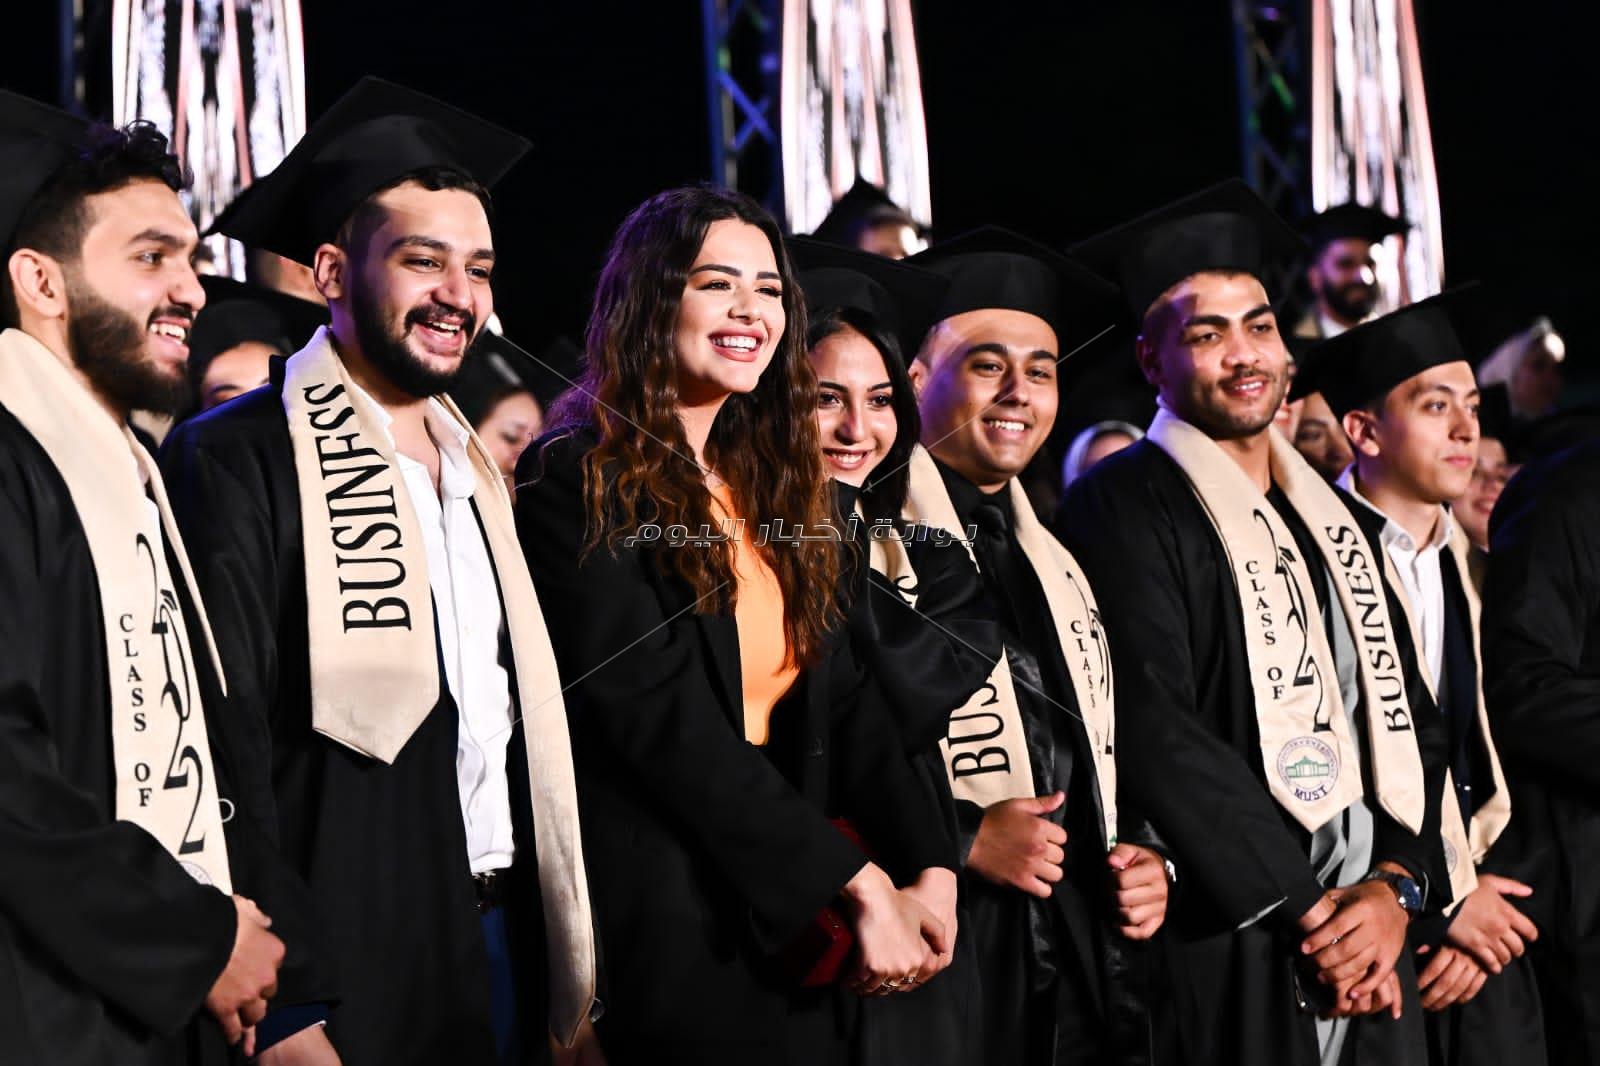 جامعة مصر للعلوم والتكنولوجيا تحتفل بتخرج دفعة جديدة من كلية الإدارة والاقتصاد